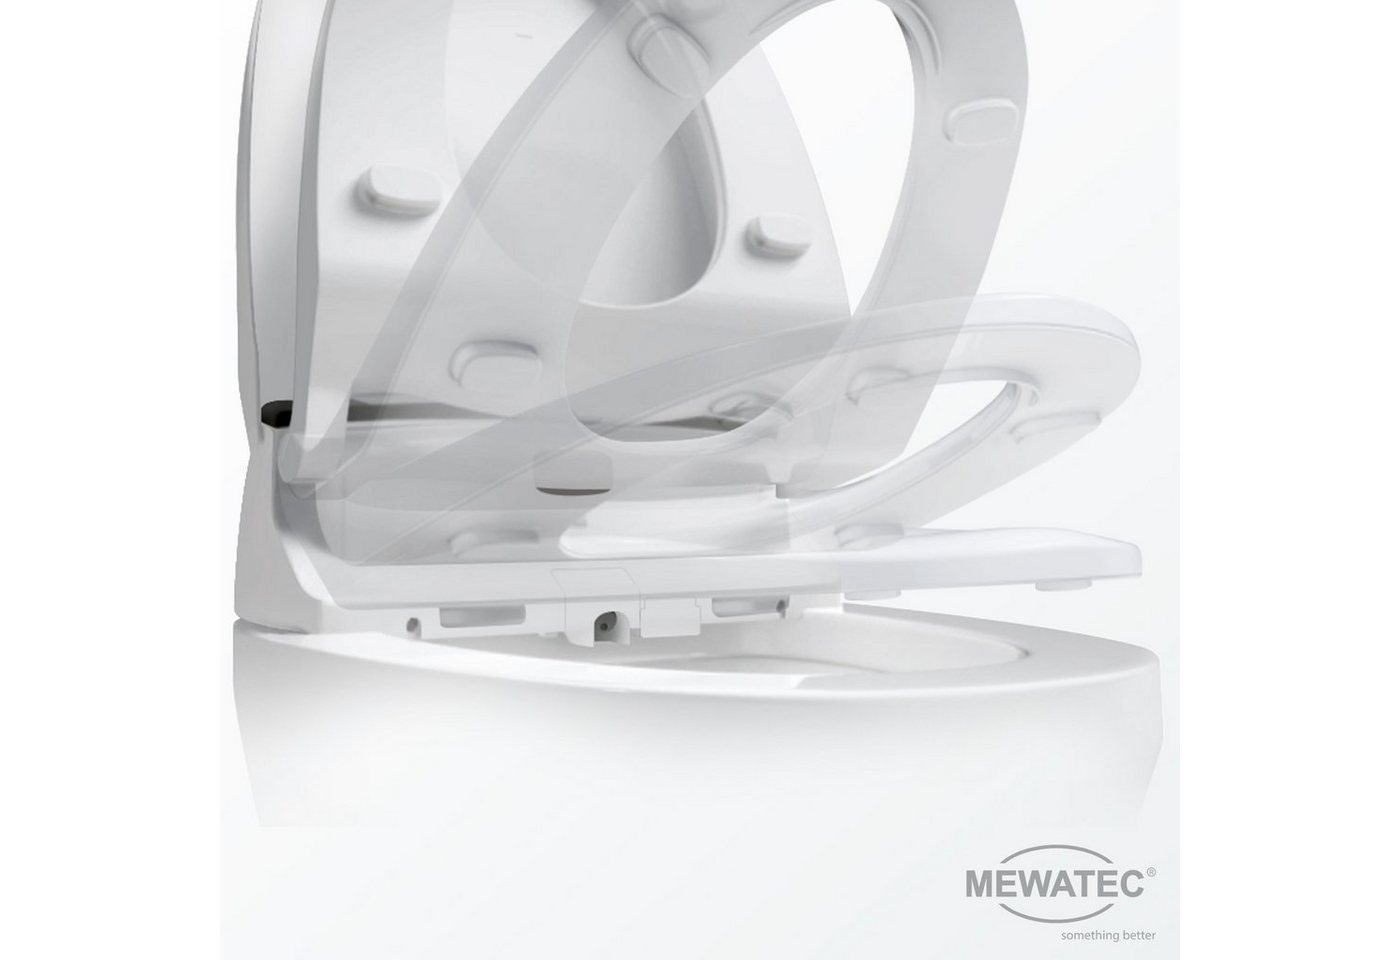 MEWATEC Dusch-WC-Sitz E900, - Premium Dusch-WC + 1 Kalkschutzfilter gratis! von MEWATEC